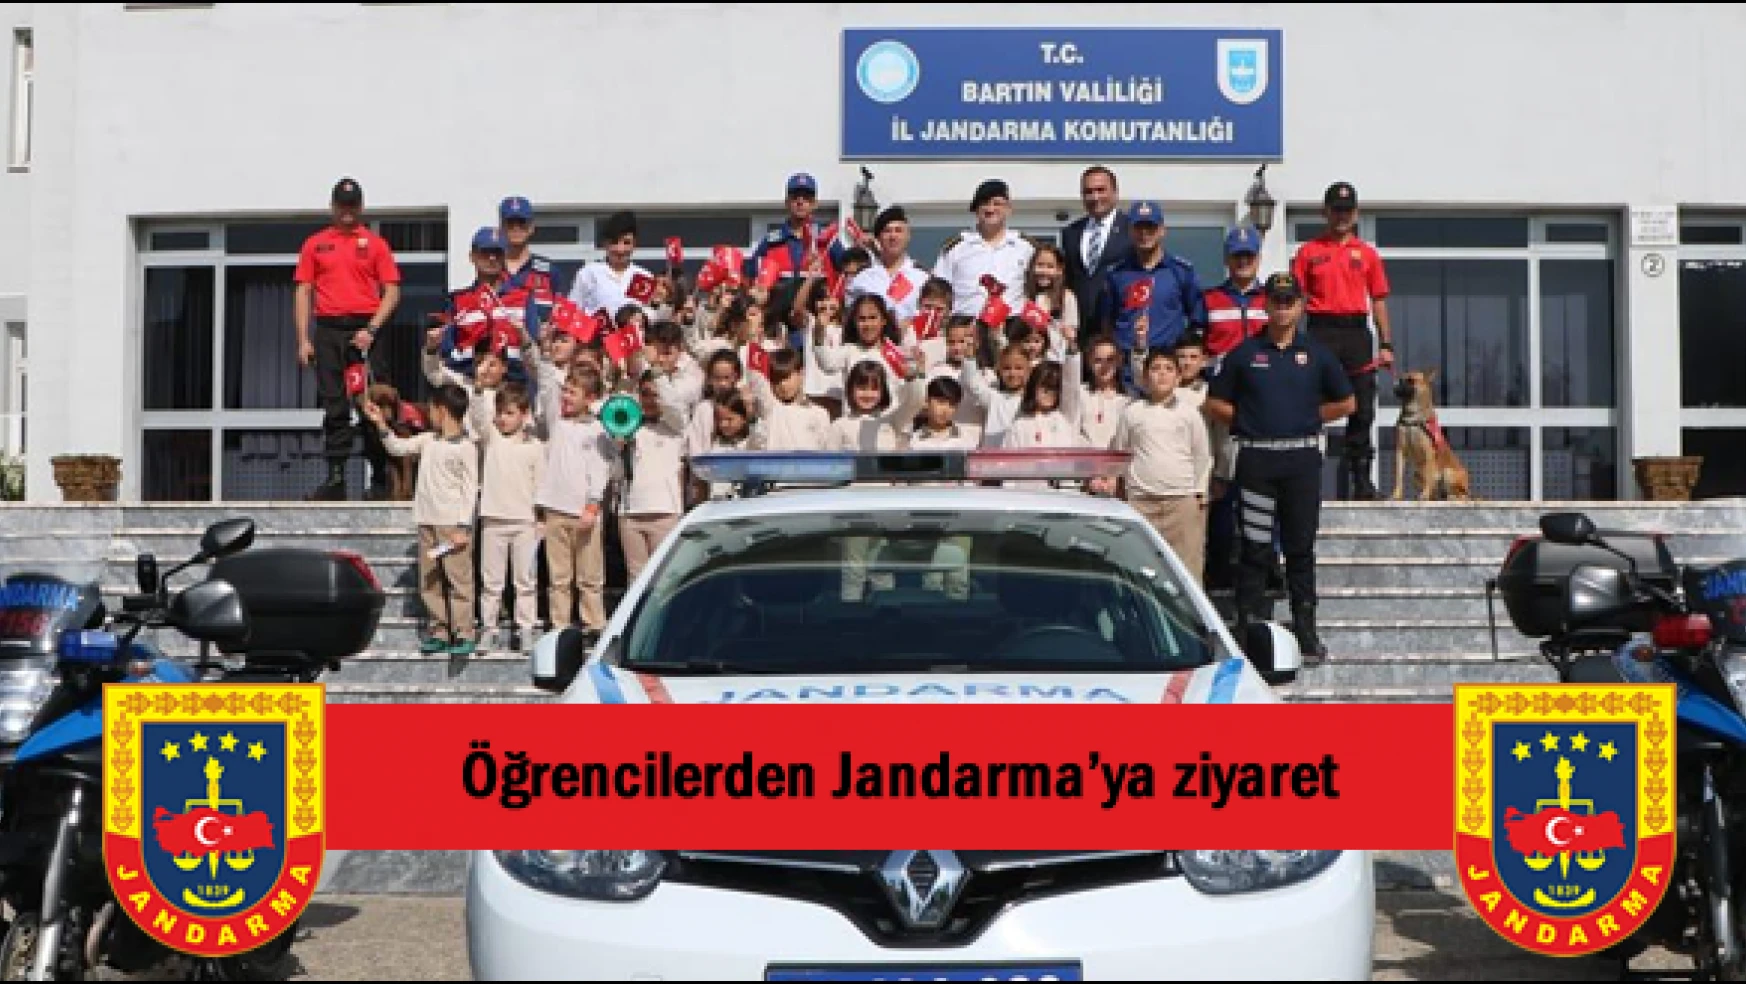 Öğrencilerden Jandarma'ya ziyaret